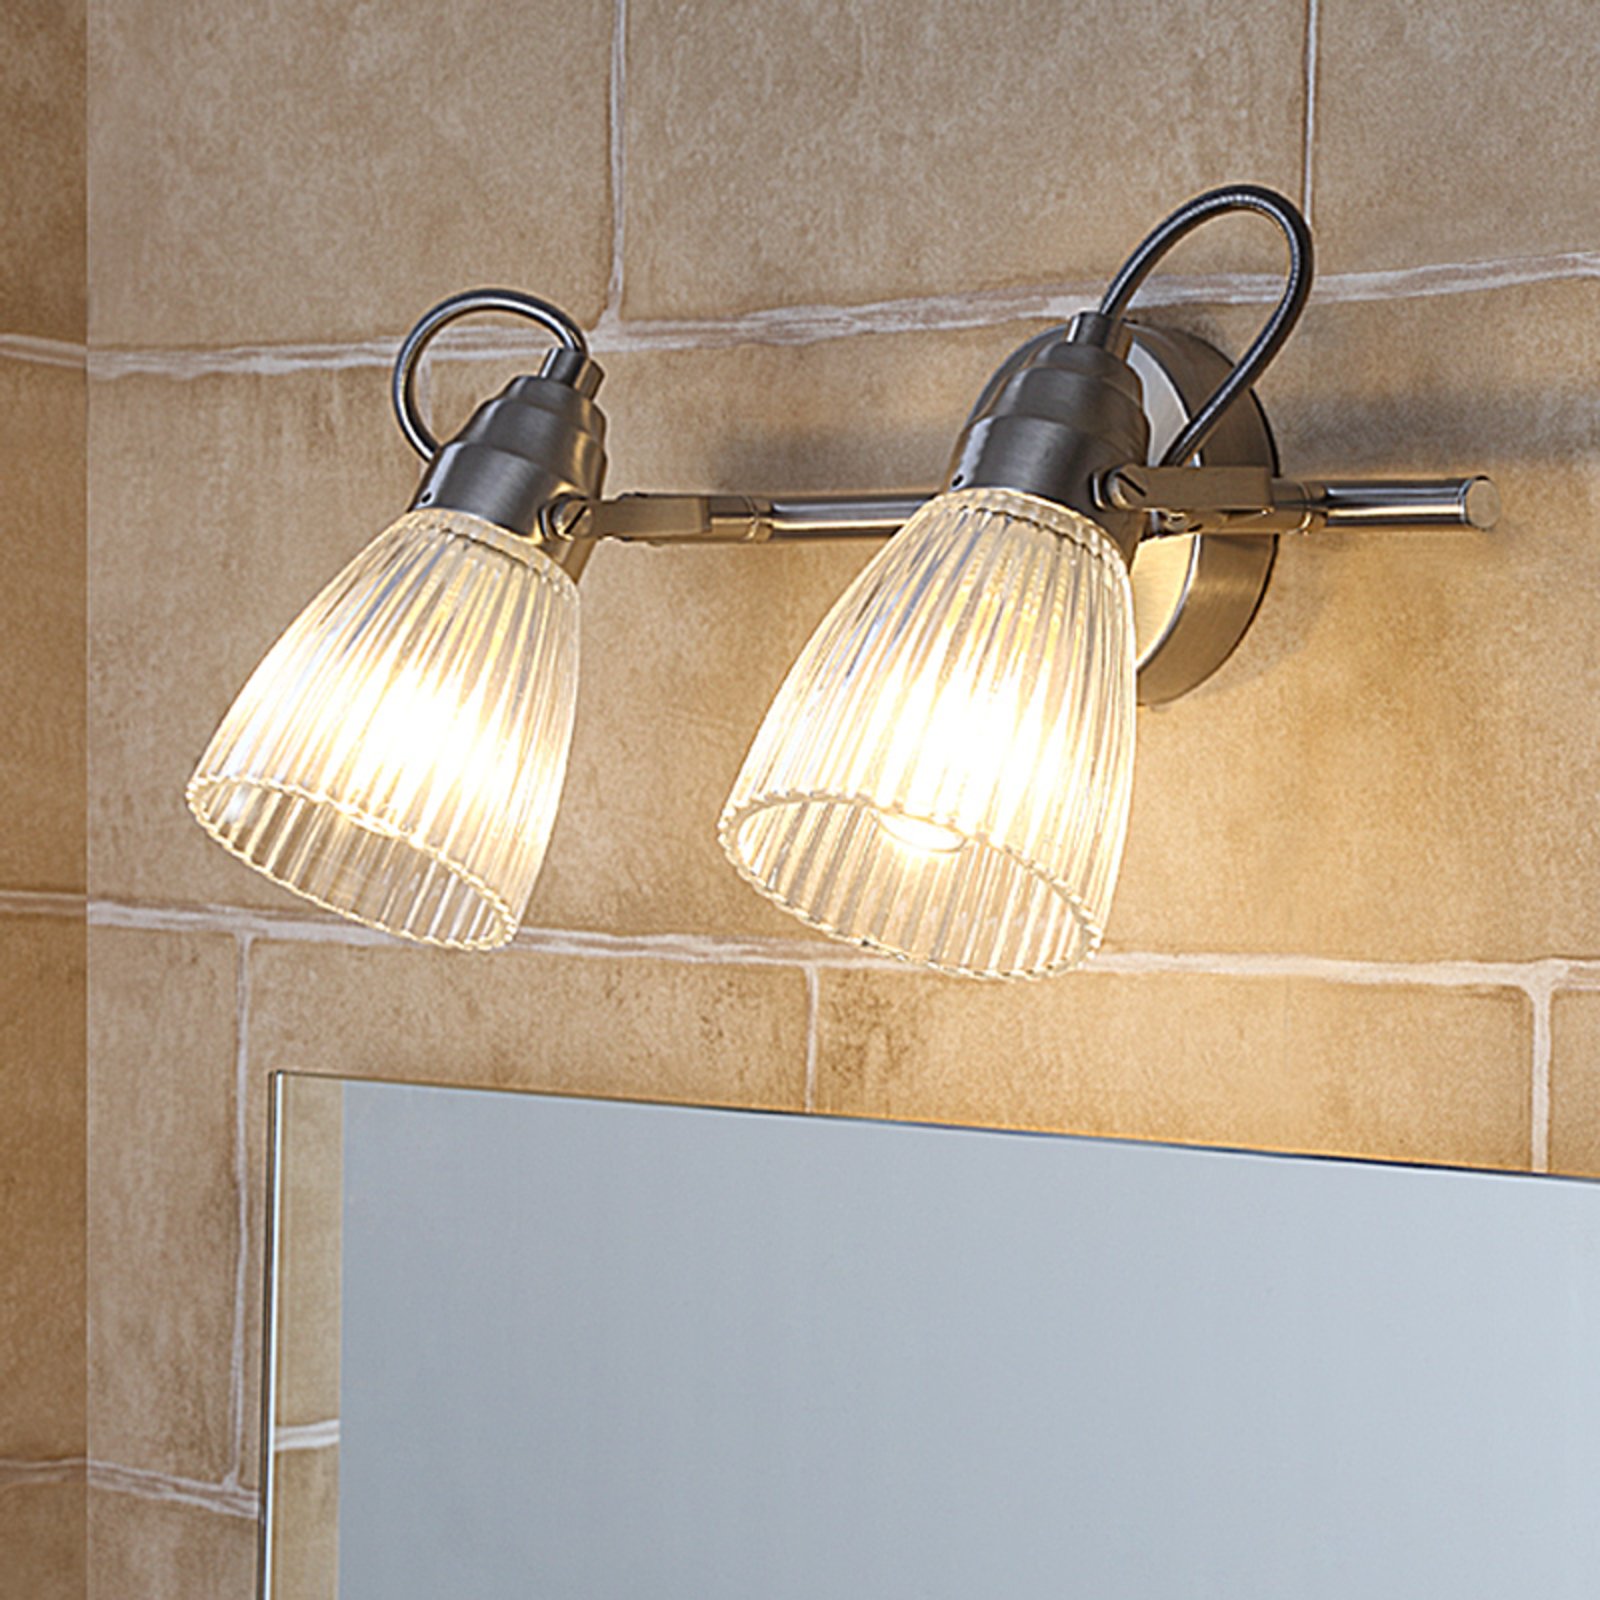 Kara fürdőszobai fali lámpa, 2 izzós, IP44